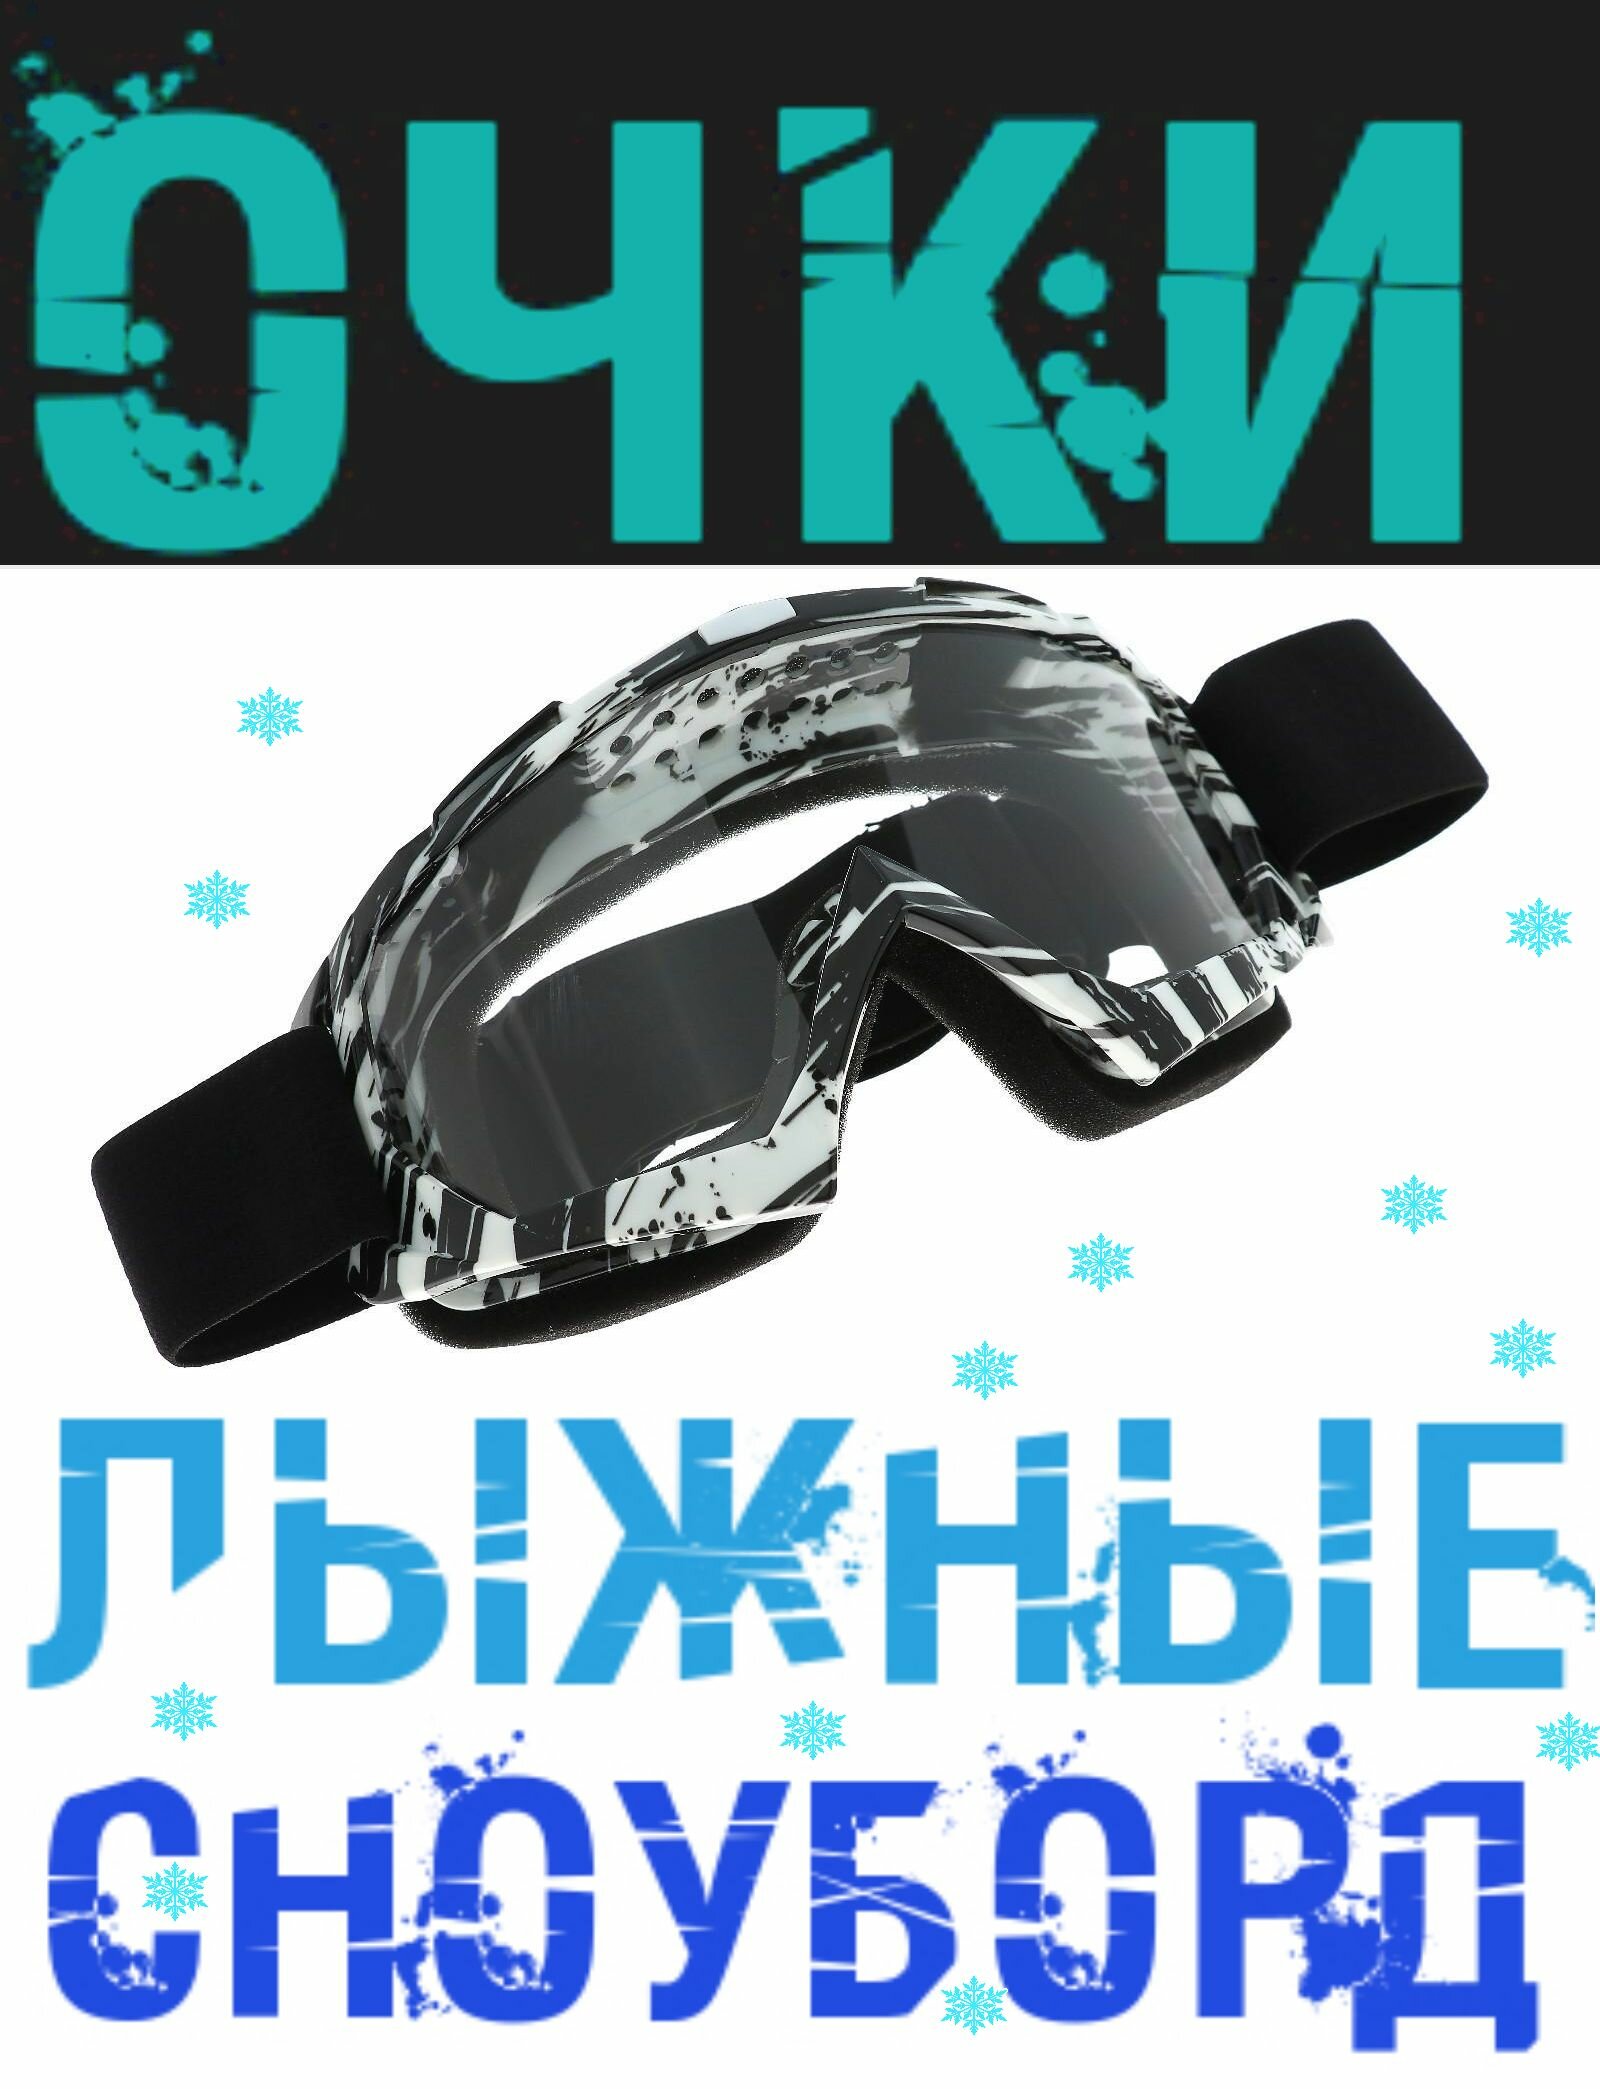 Очки для езды на сноуборде лыжах снегоходе квадроцикле мототехнике цвет бело-черный стекло - прозрачное